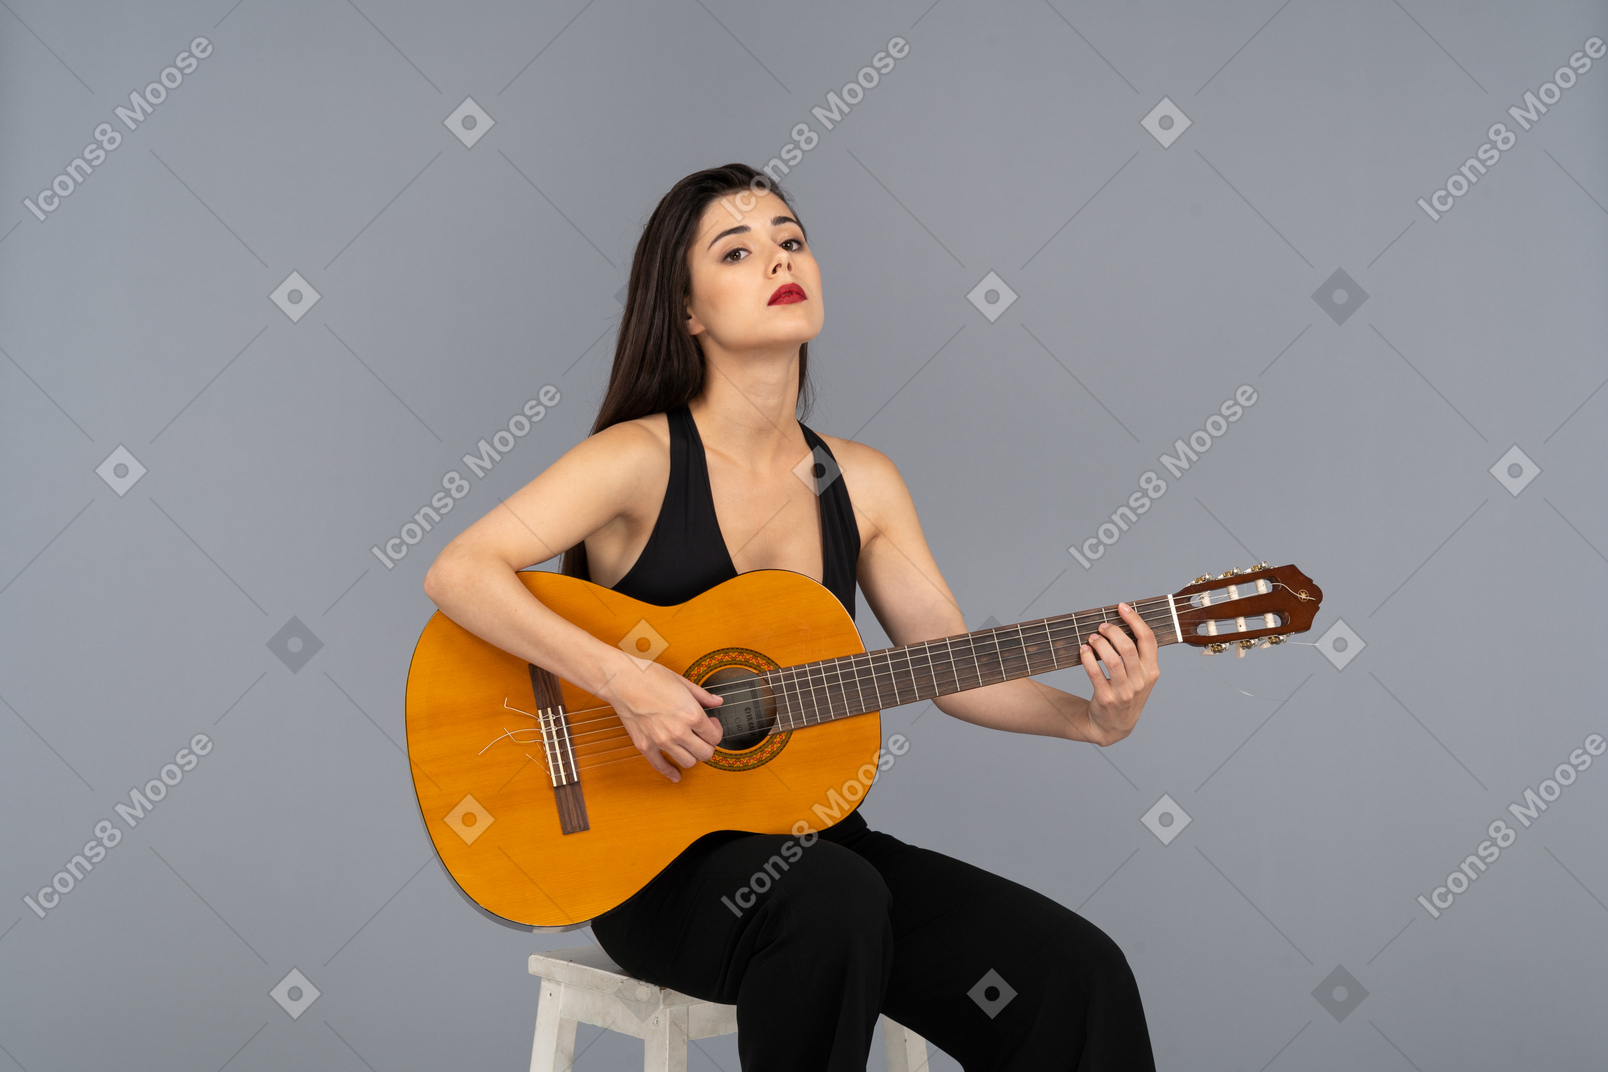 Vista frontal de una joven sentada en traje negro sosteniendo la guitarra y levantando la cabeza